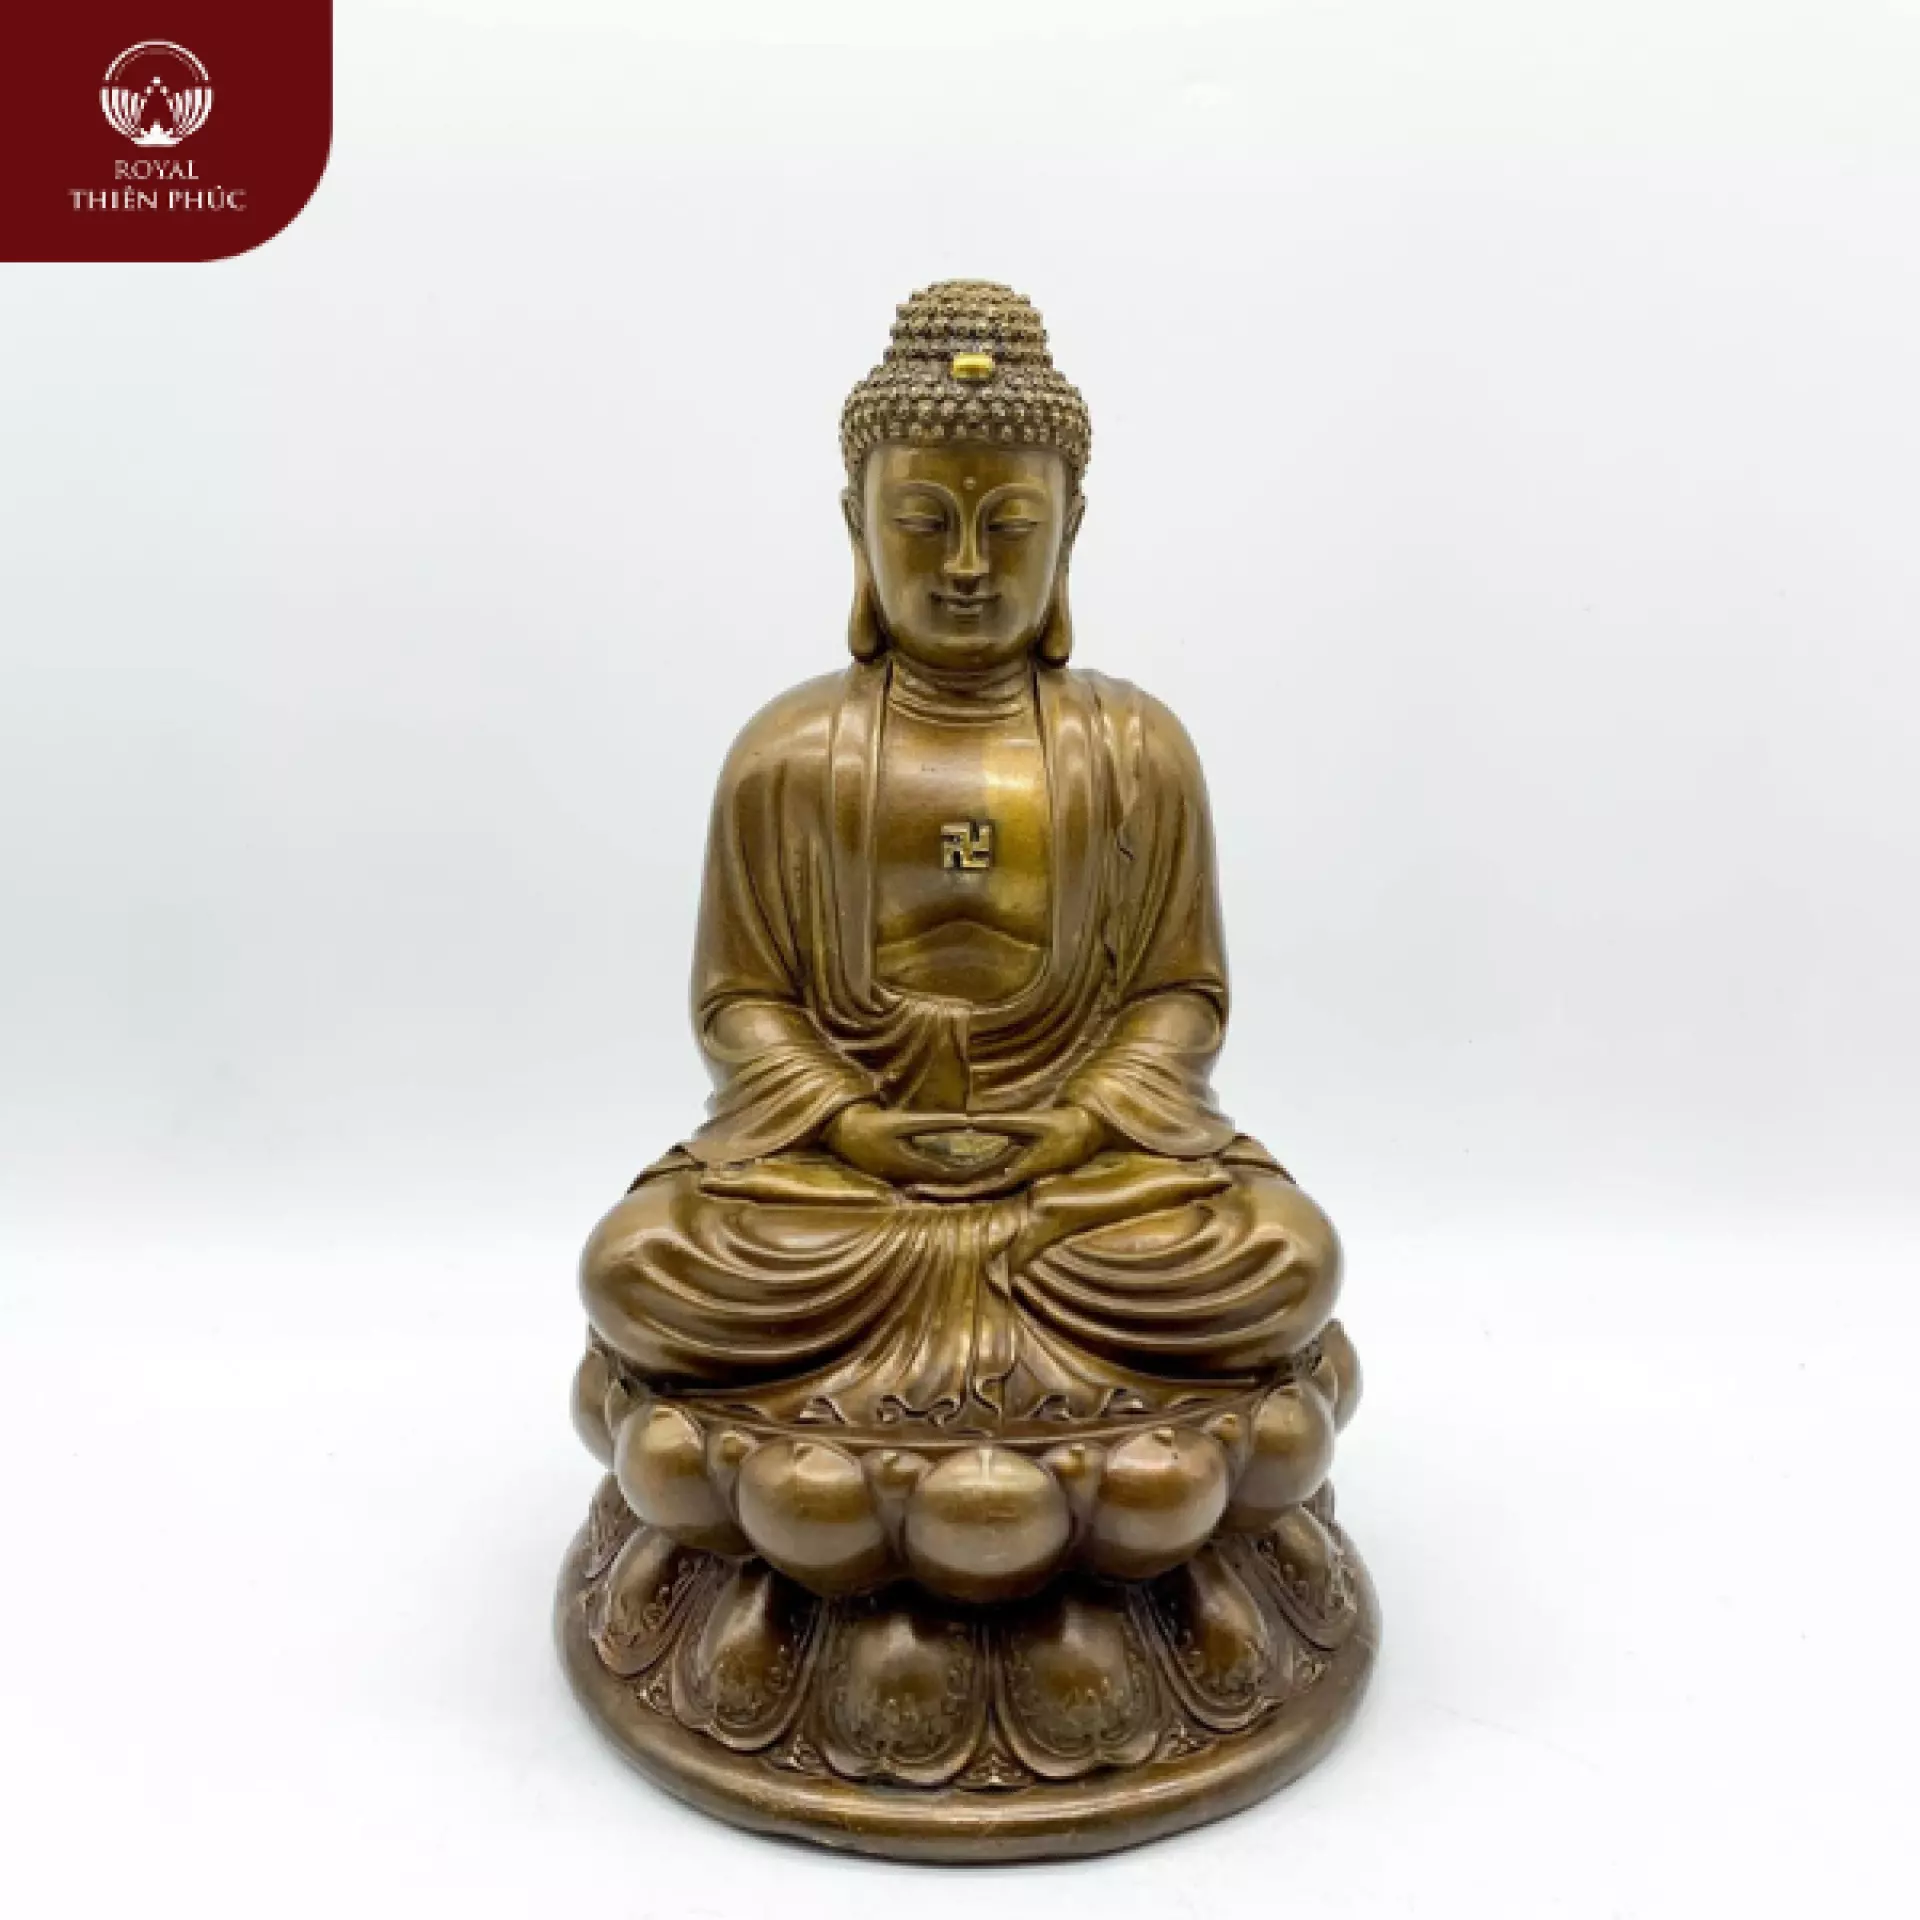 Tượng Phật A Di Đà bằng đồng vàng